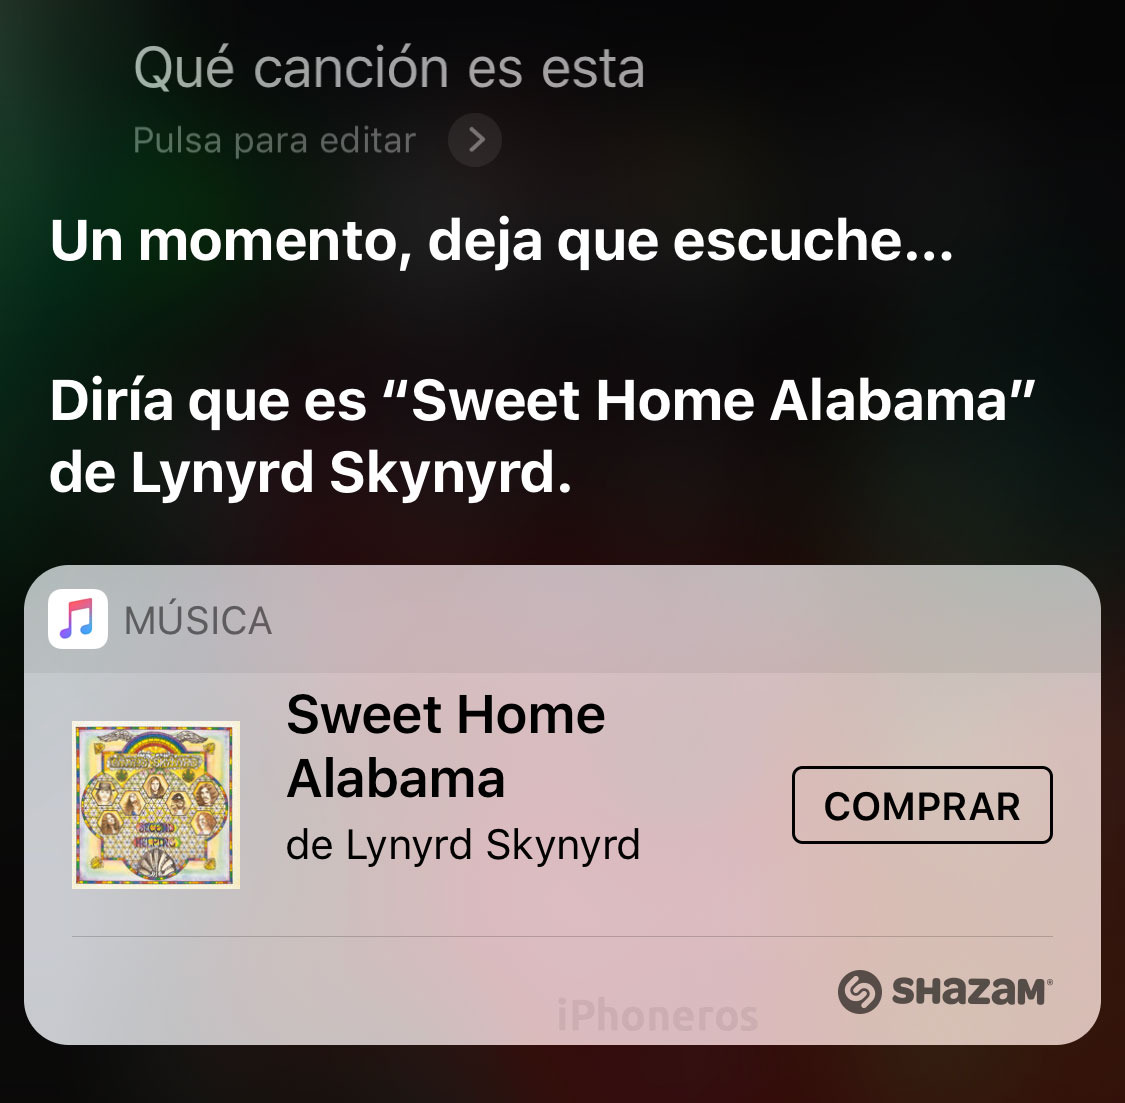 Buscando una canción con Siri